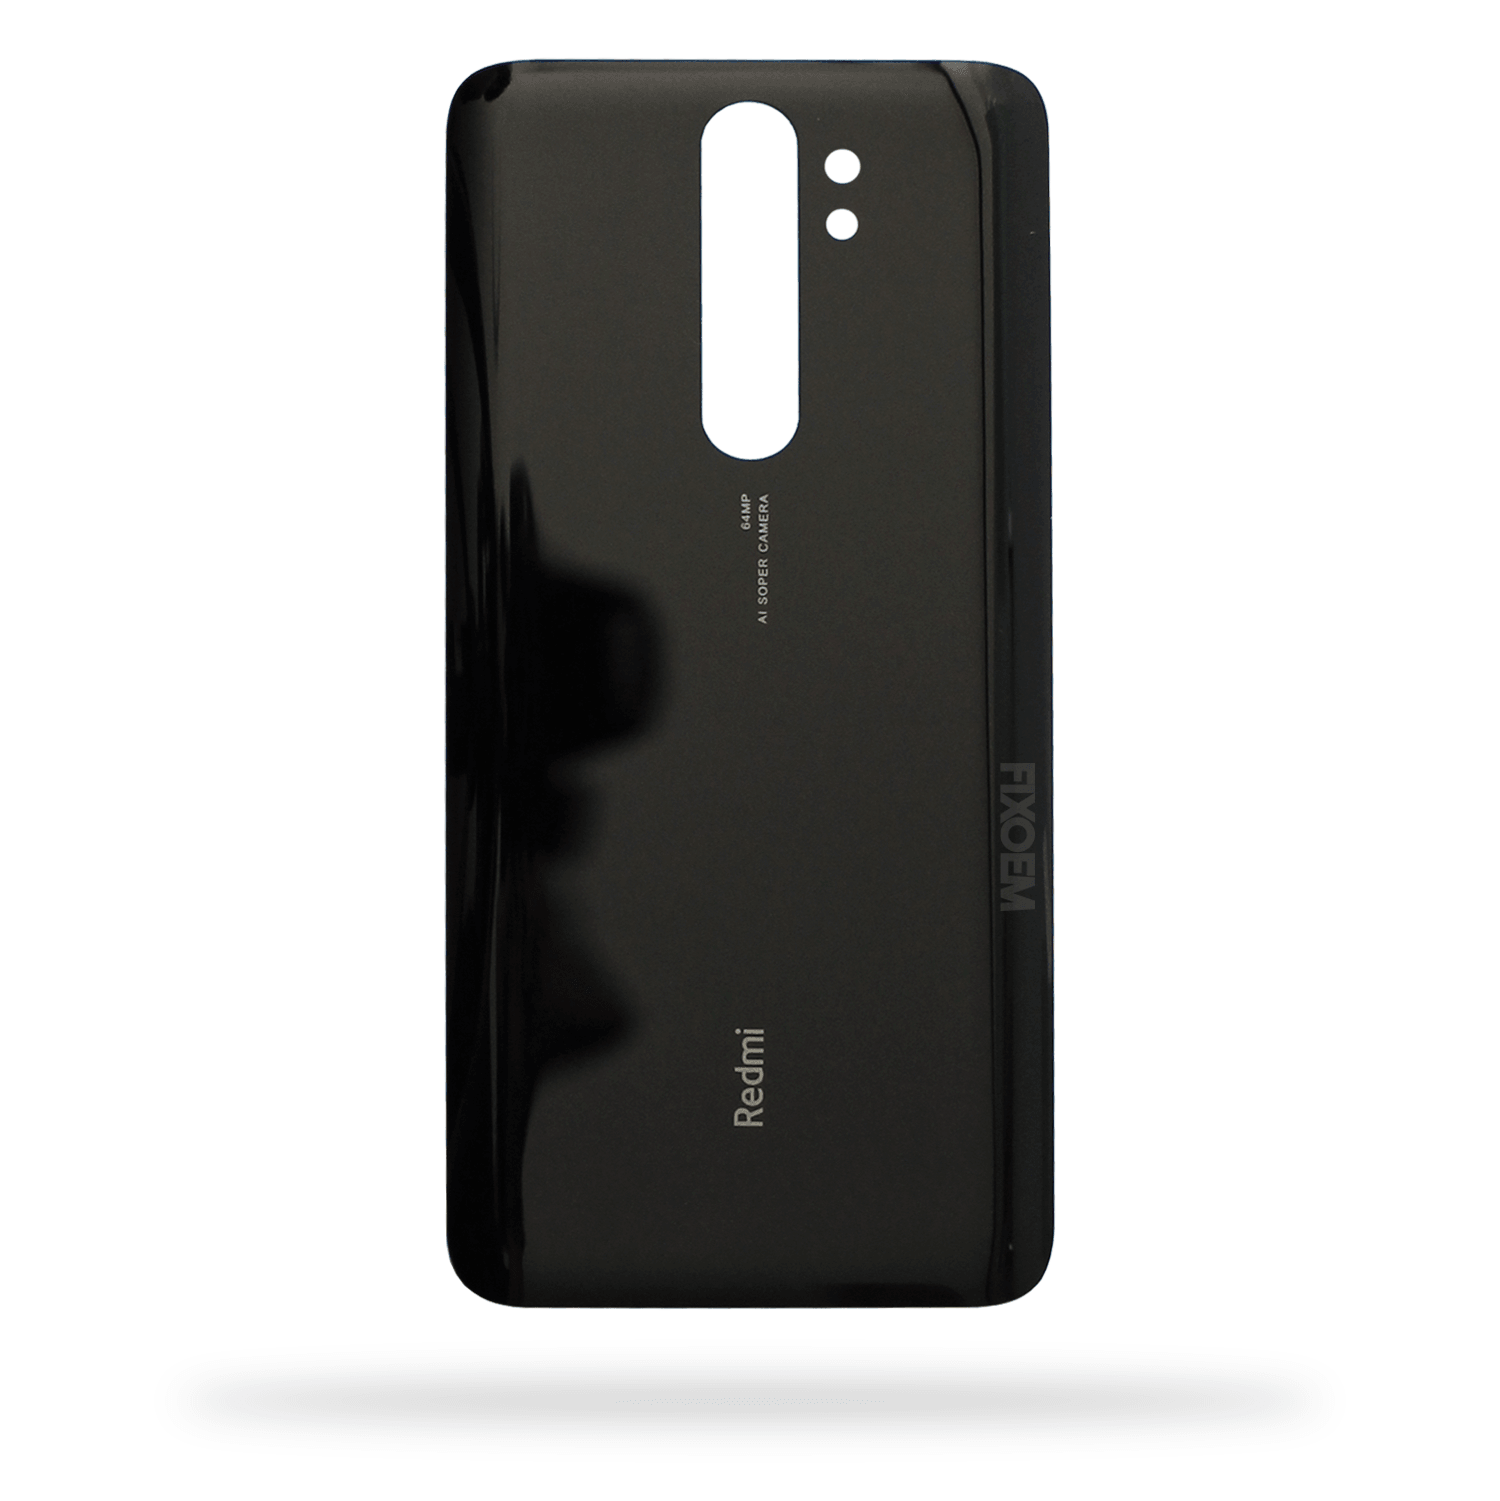 Tapa Trasera Xiaomi Redmi Note 8 Pro M1906G7G a solo $ 110.00 Refaccion y puestos celulares, refurbish y microelectronica.- FixOEM